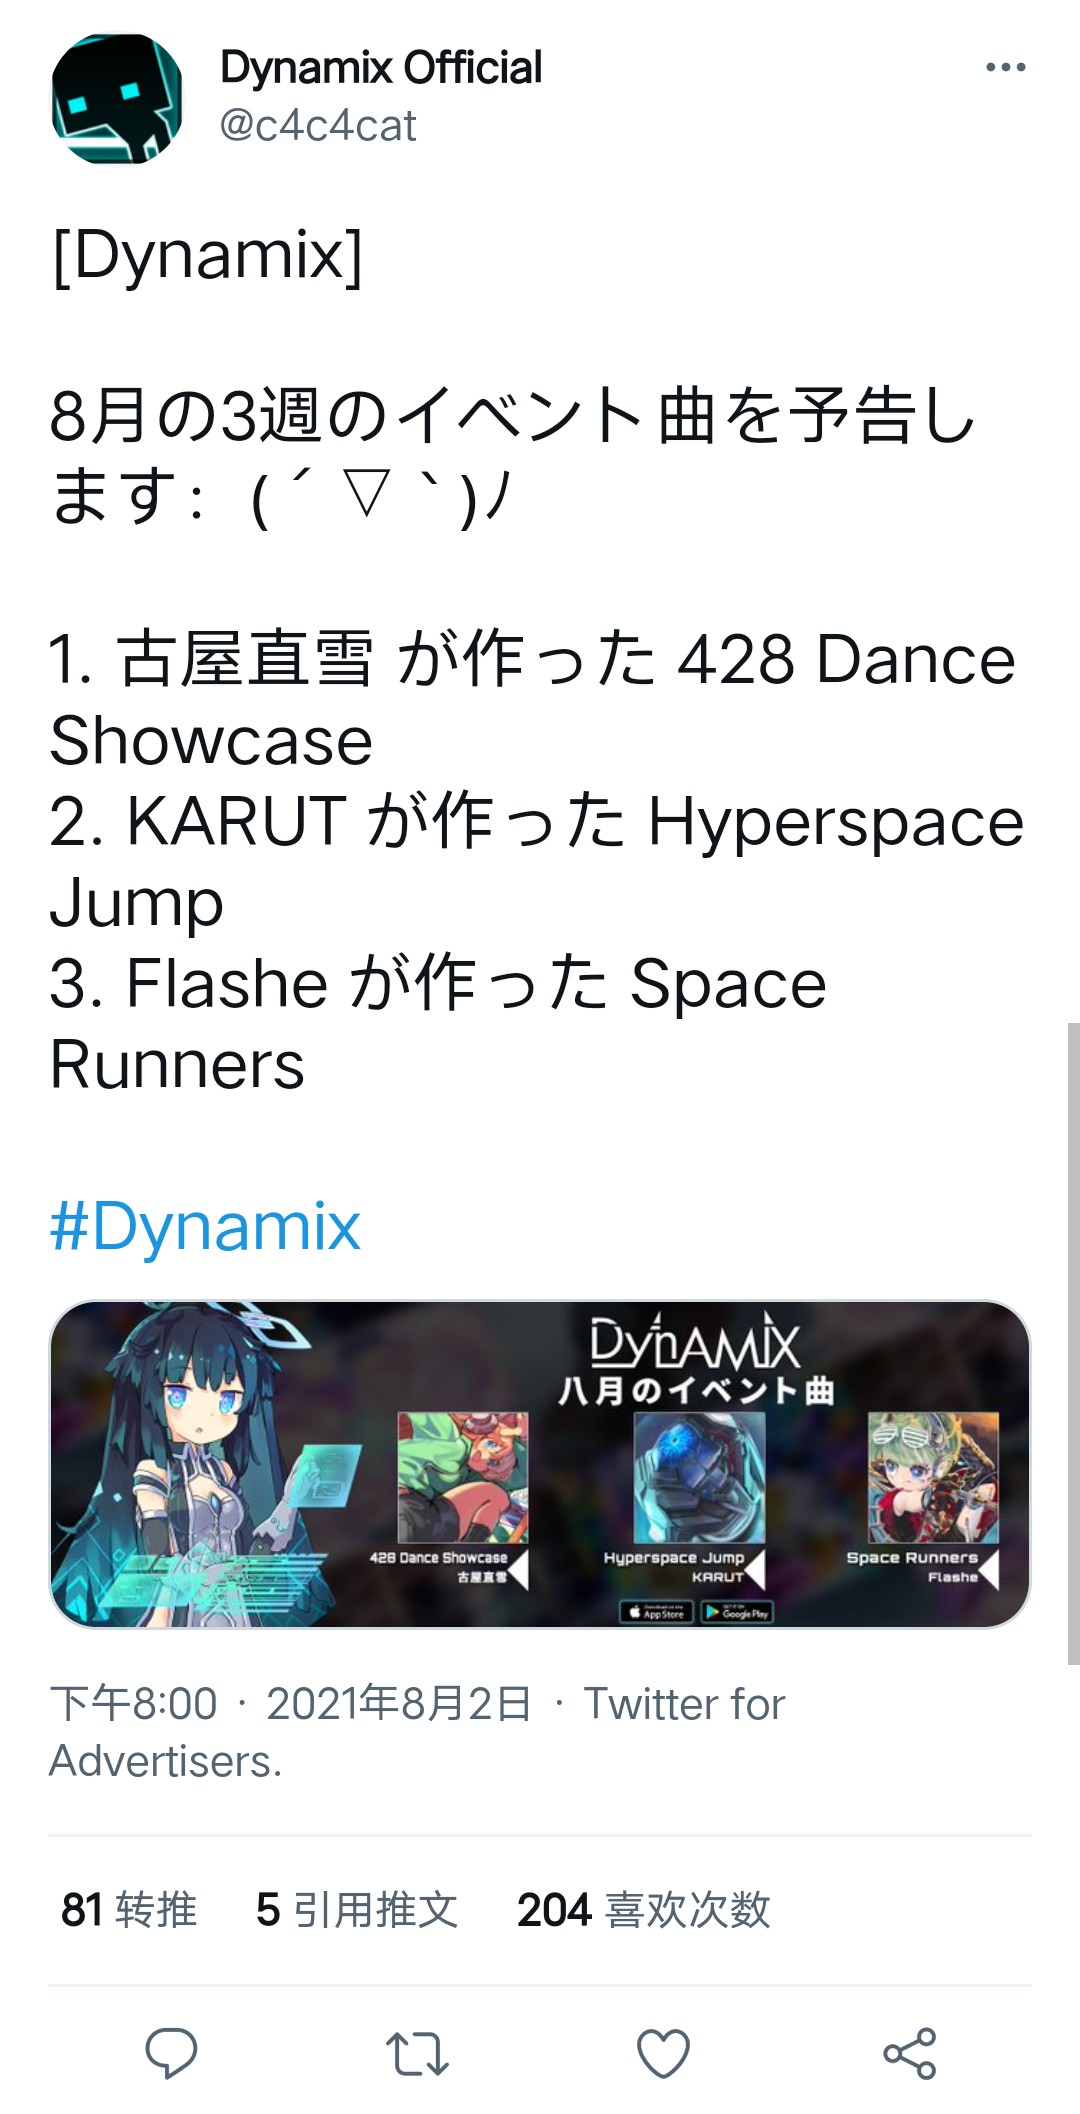 [搬运]Dynamix2021年8月Event&复刻曲目